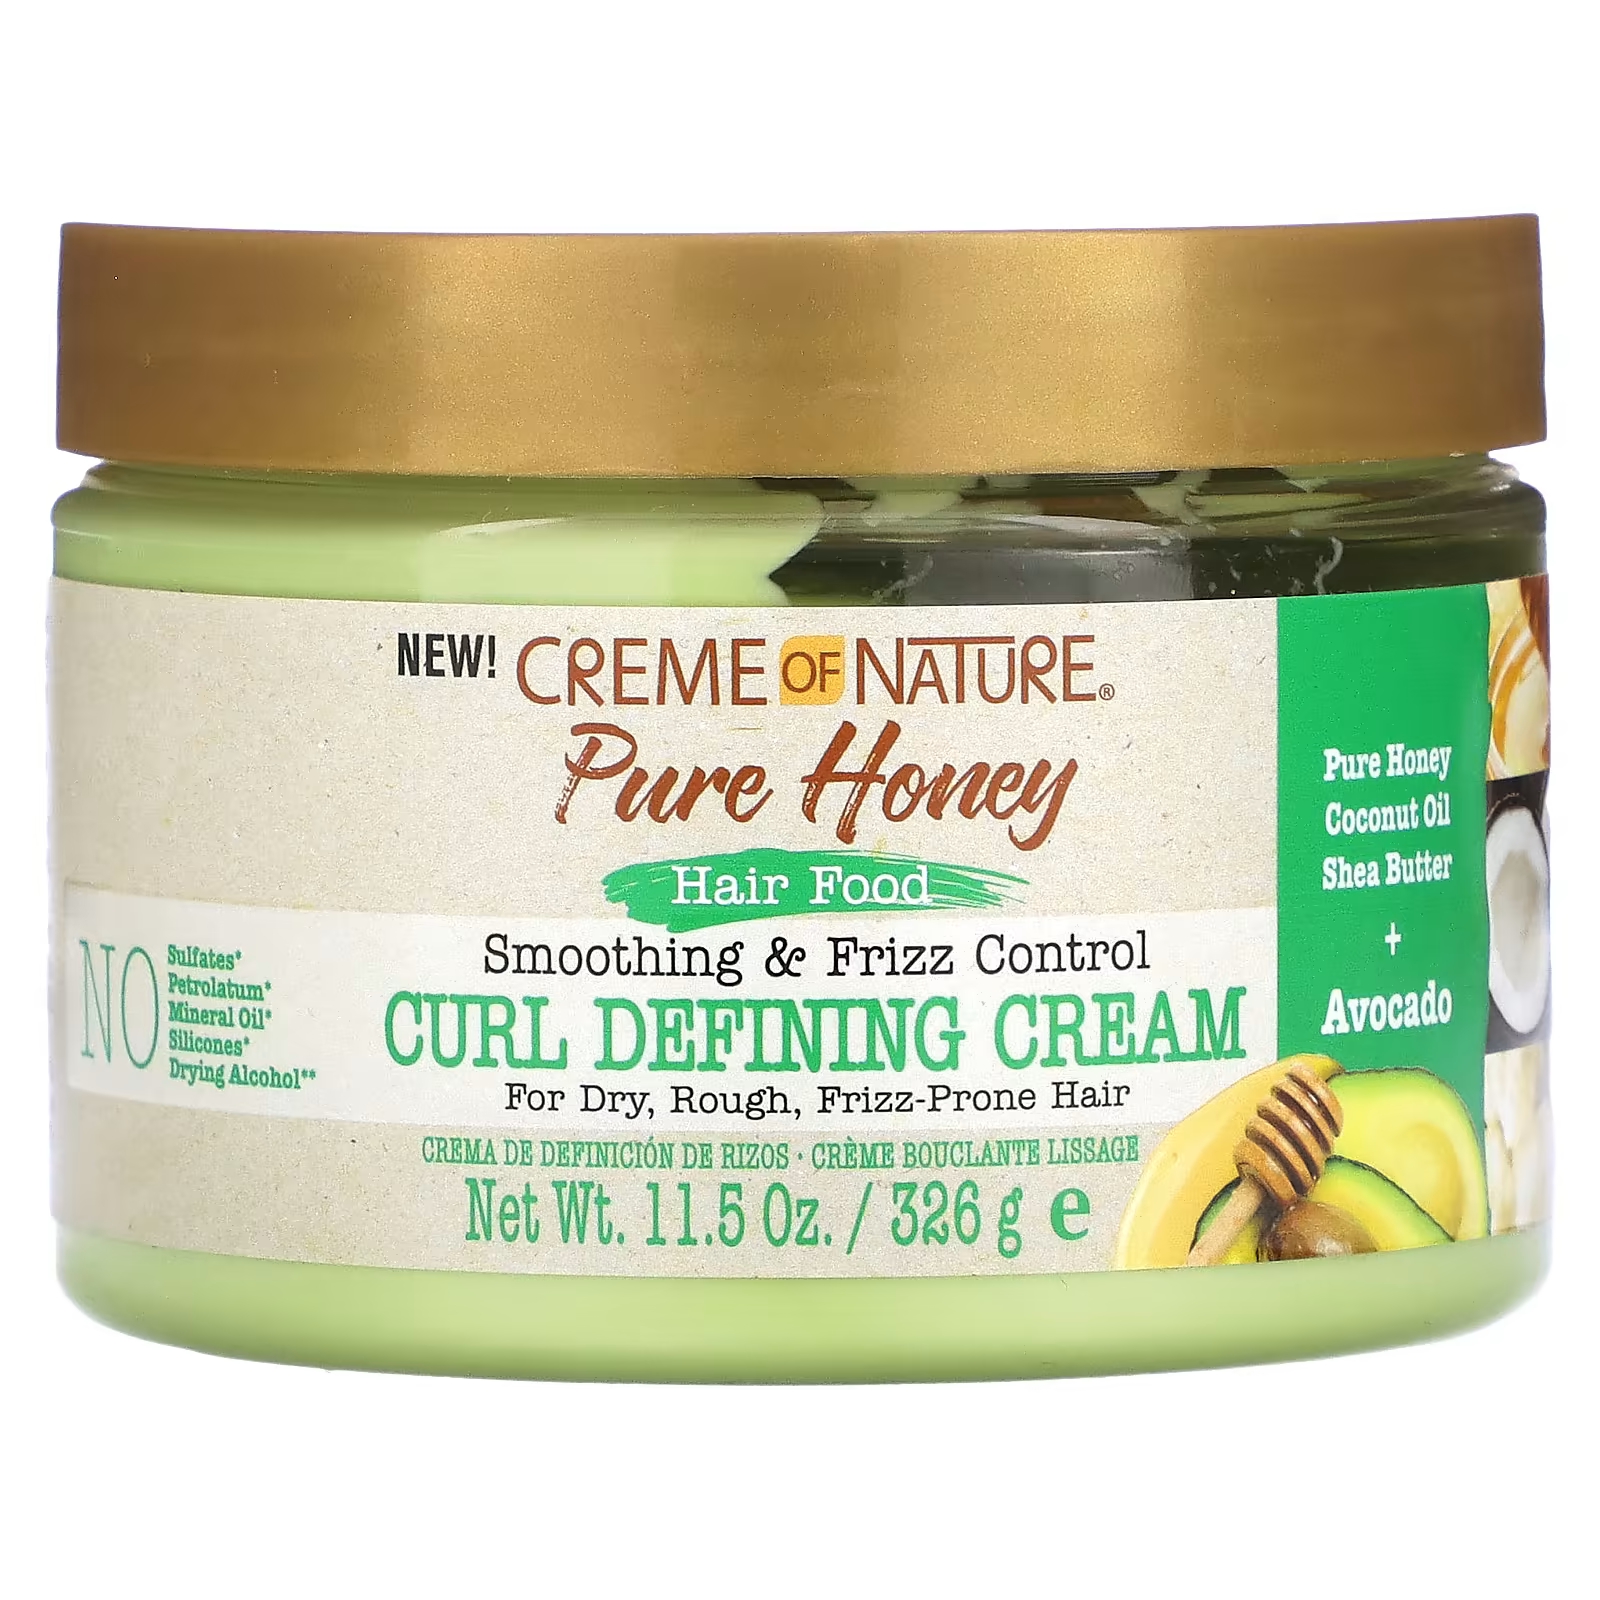 Крем для разглаживания и контроля вьющихся волос Creme Of Nature Pure Honey определяющий кудри, 326 г sheamoisture питательное увлажнение для волос 100% кокосовое масло холодного отжима 100 г 3 5 унции